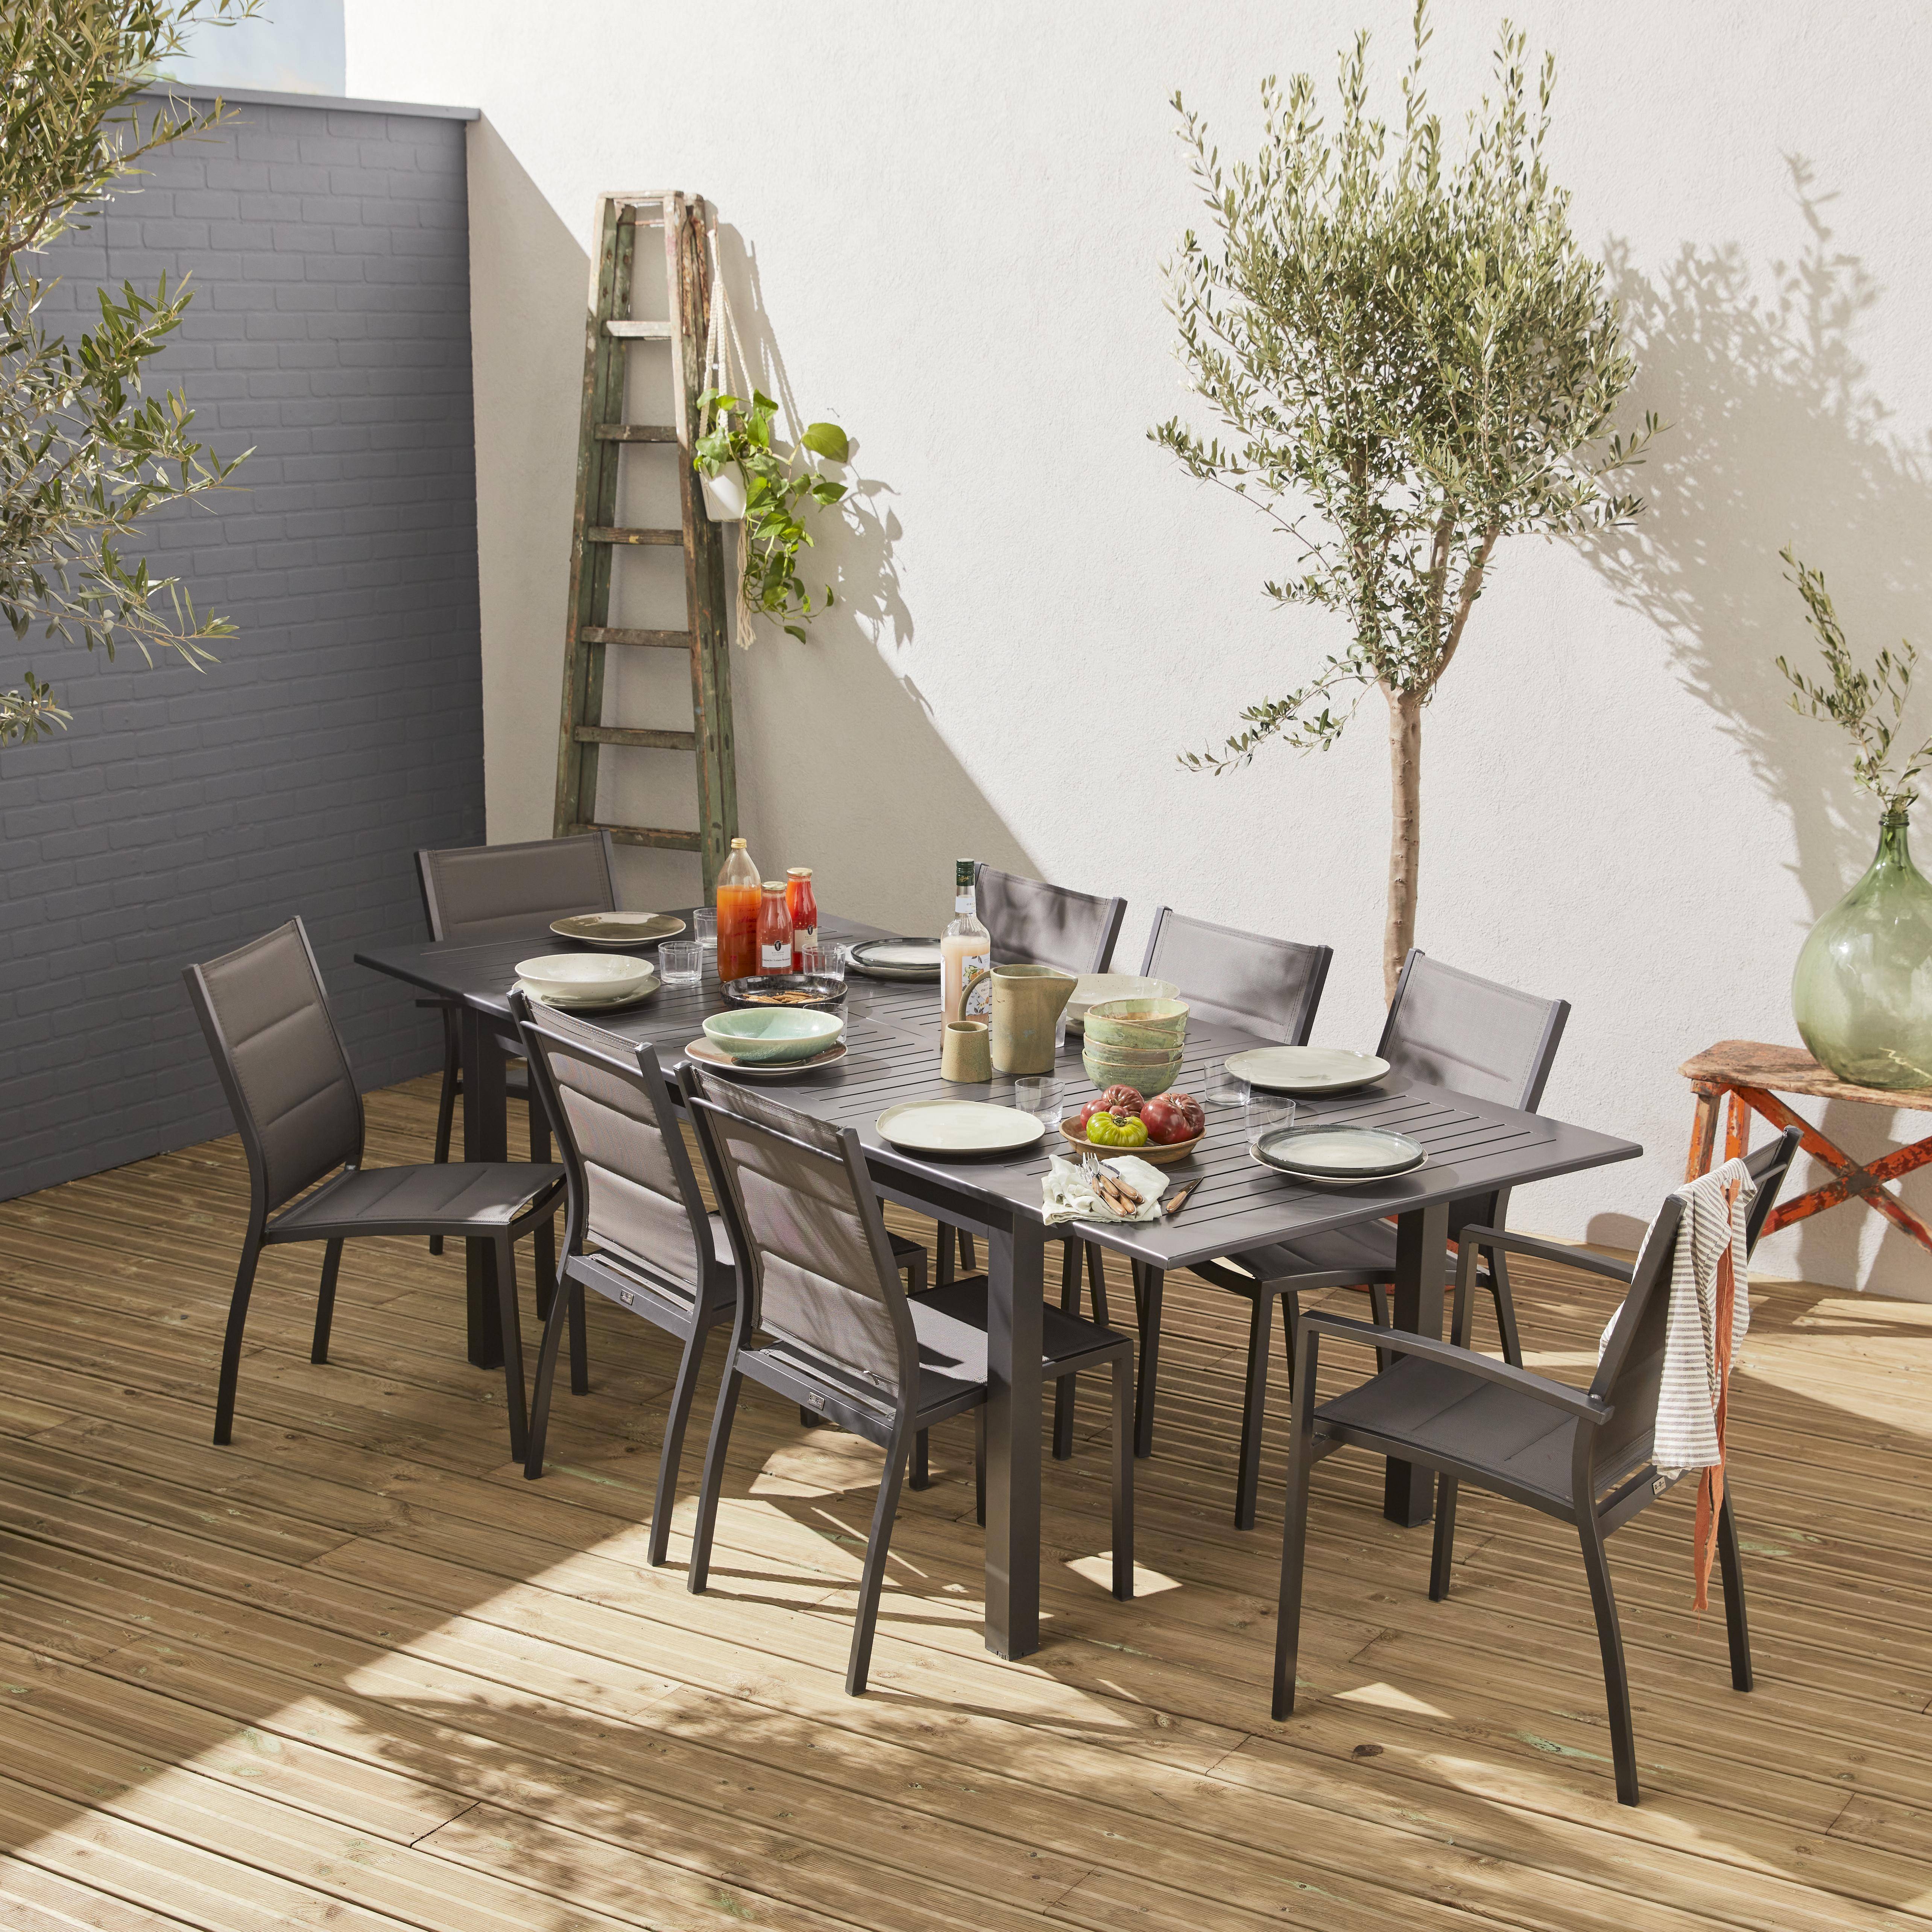 Set da giardino con tavolo allungabile - modello: Chicago, colore: Antracite - Tavolo in alluminio, dimensioni: 175/245cm con prolunga e 8 sedute in textilene,sweeek,Photo1